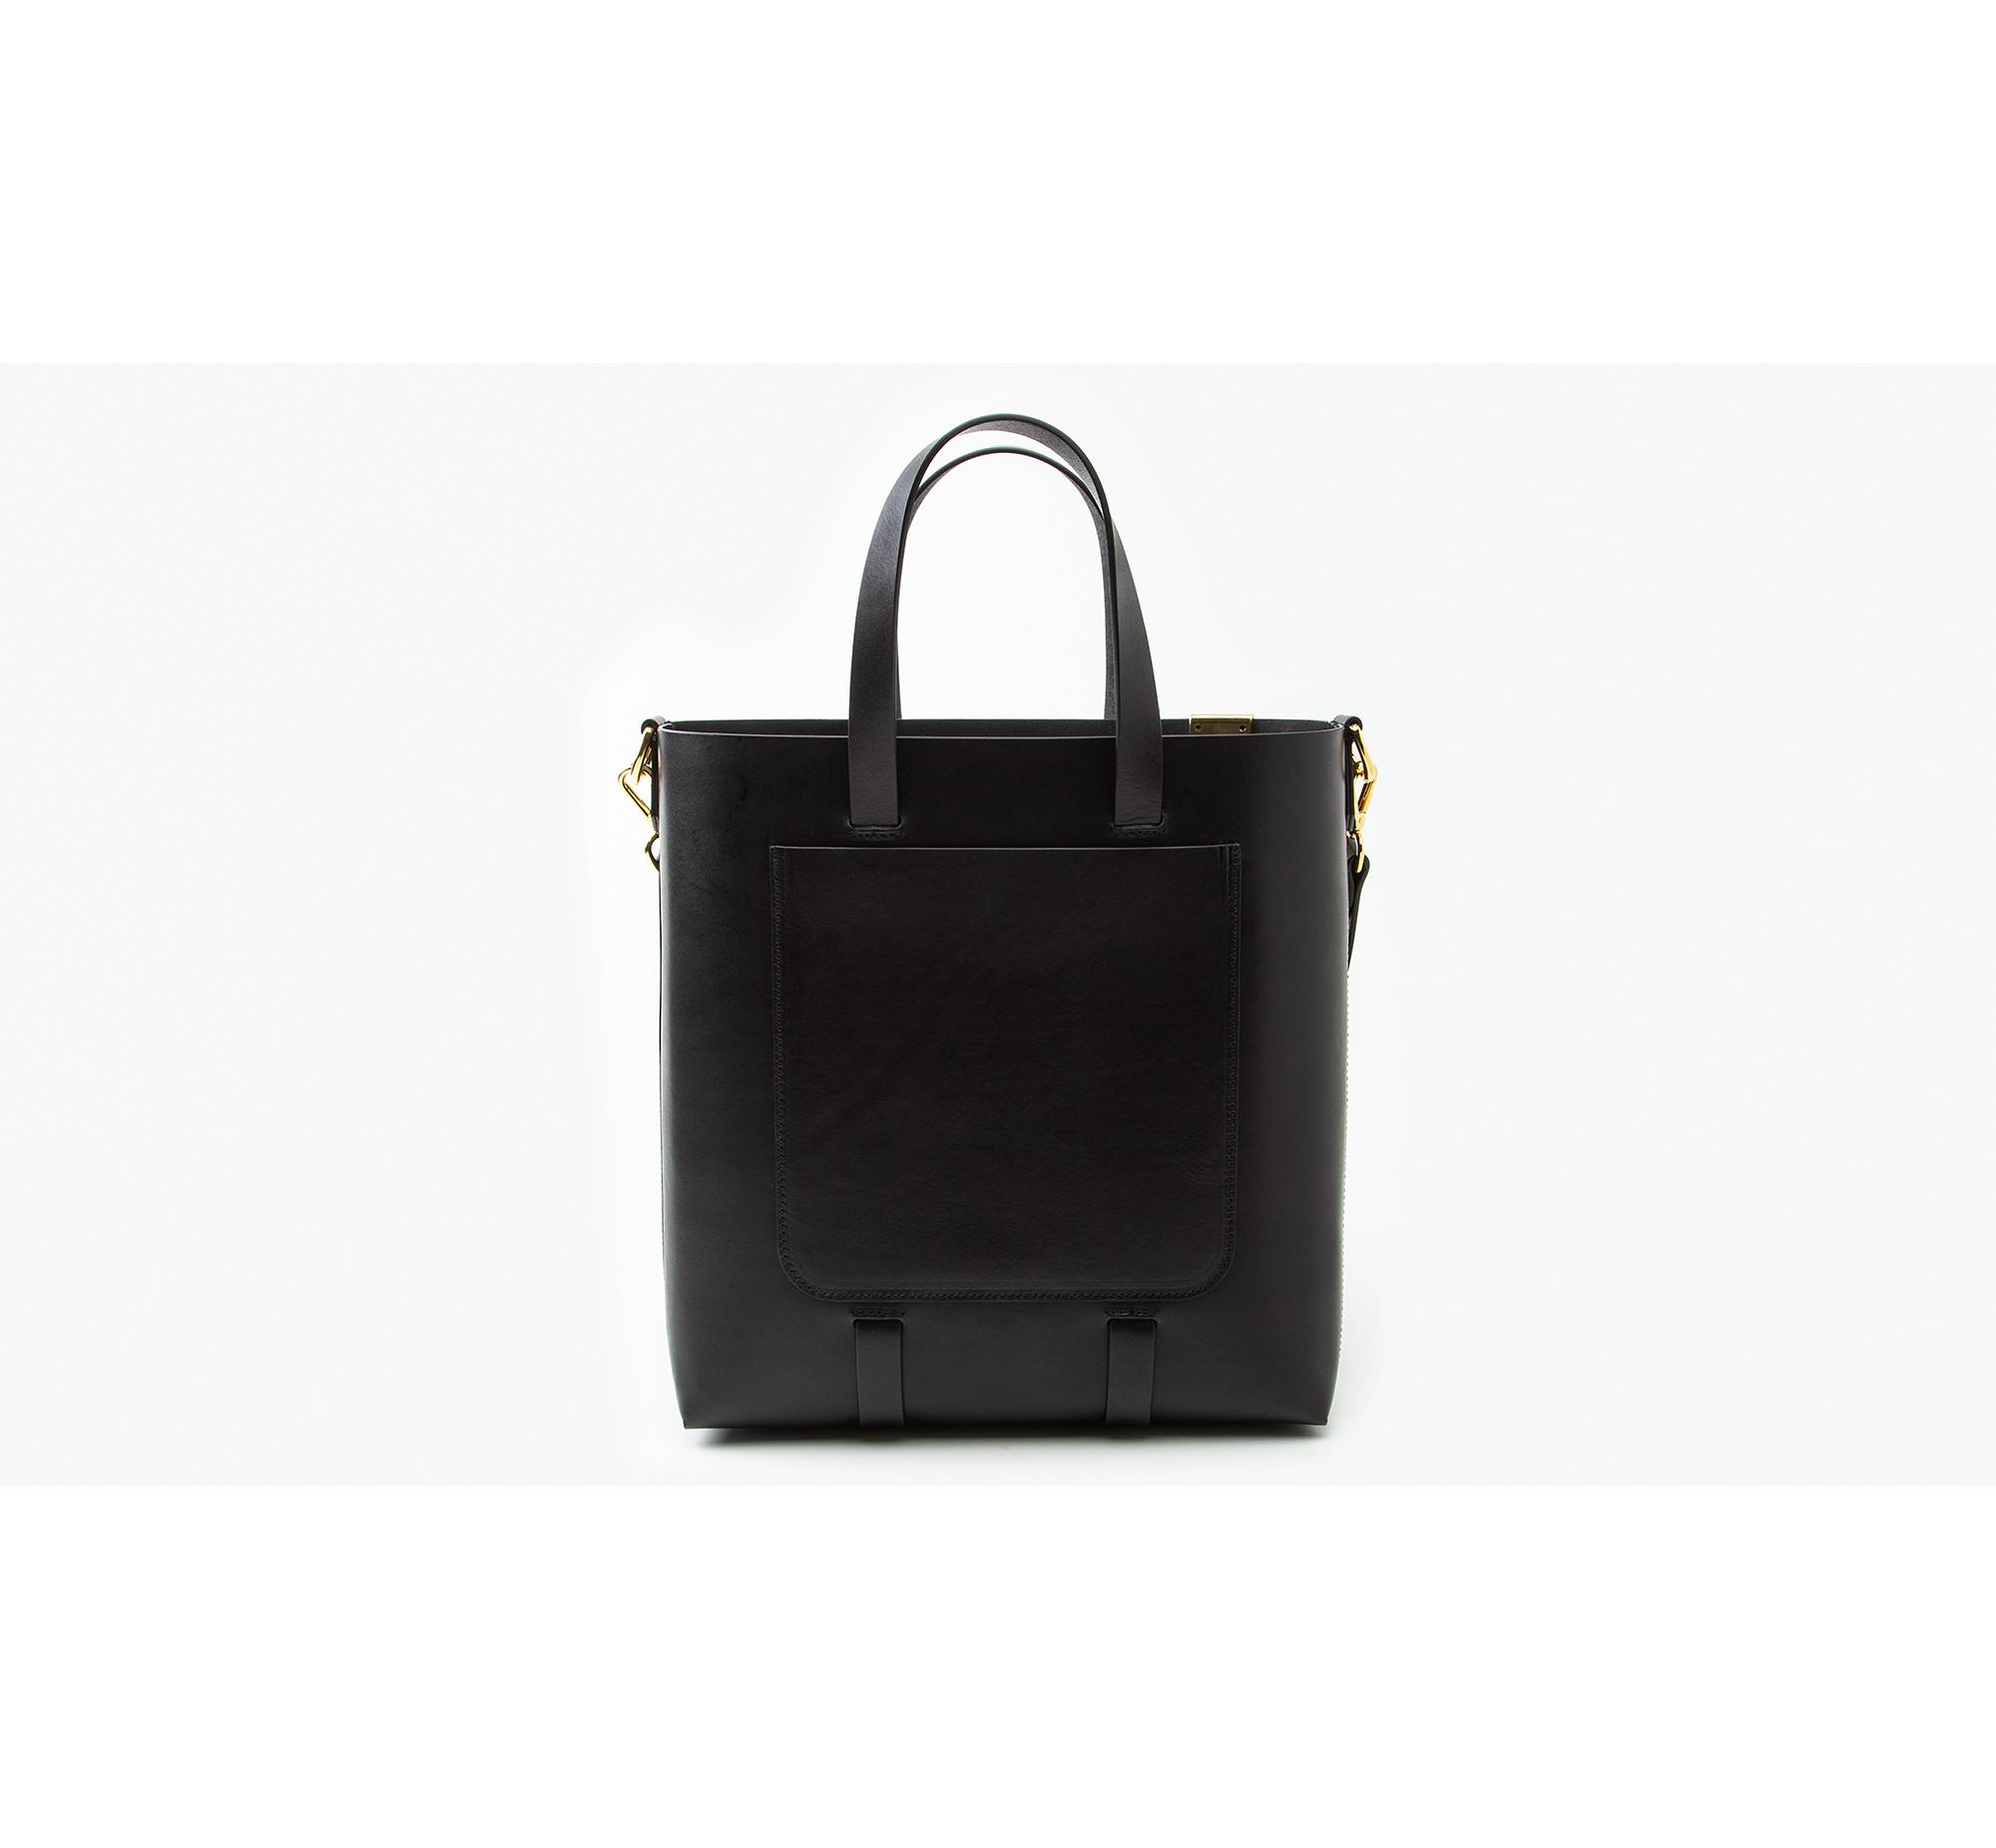 Premium Structured Tote Bag, Black